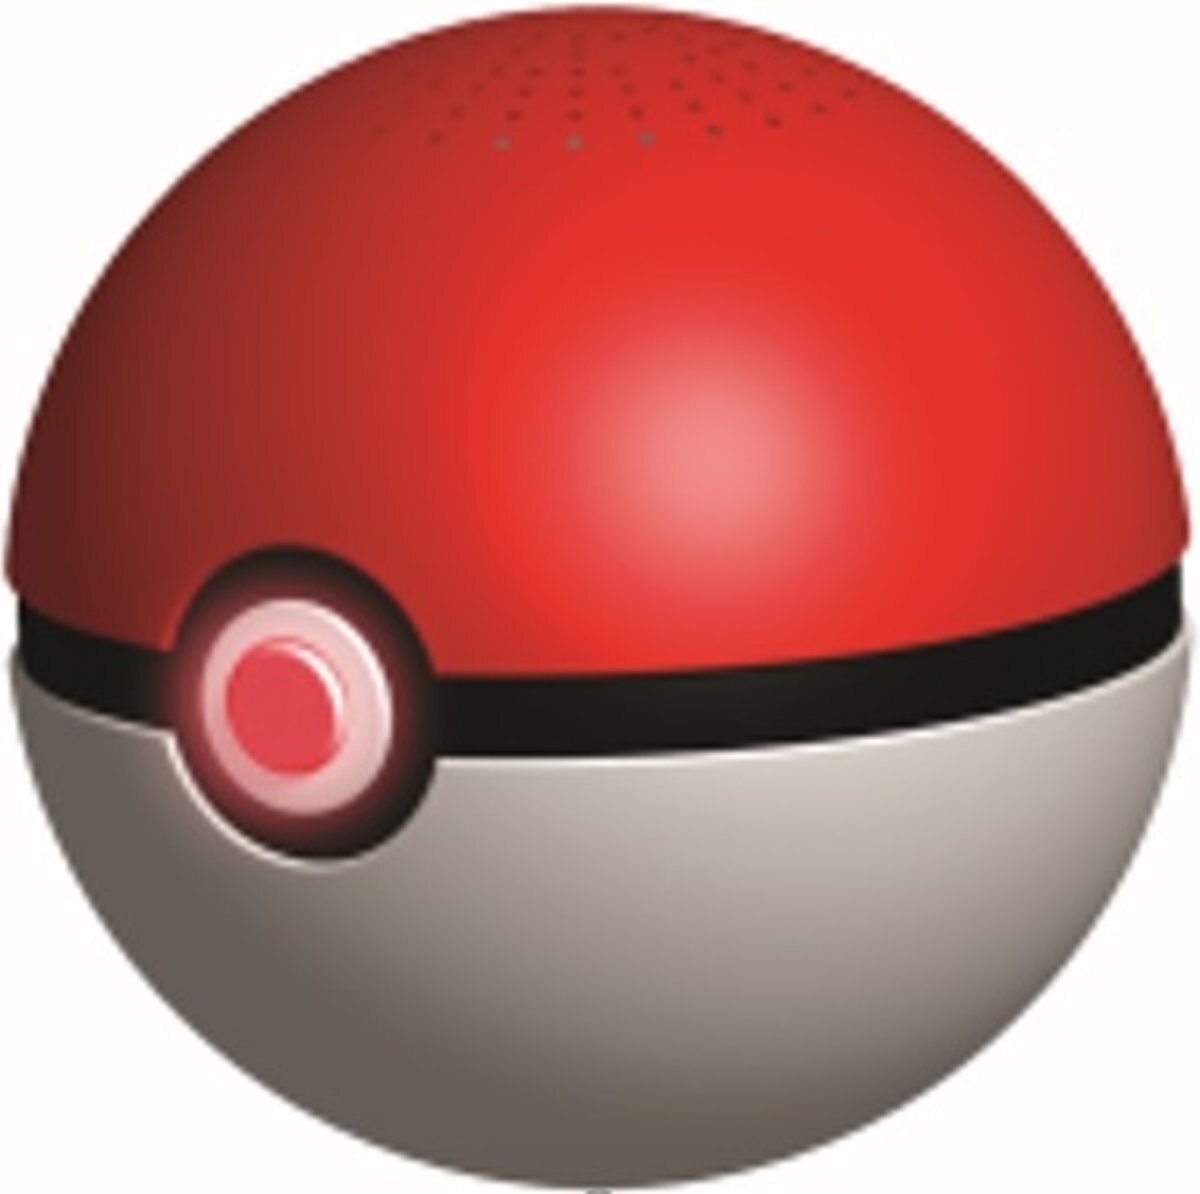 Teknofun Pokemon Pokeball Bluetooth Speaker